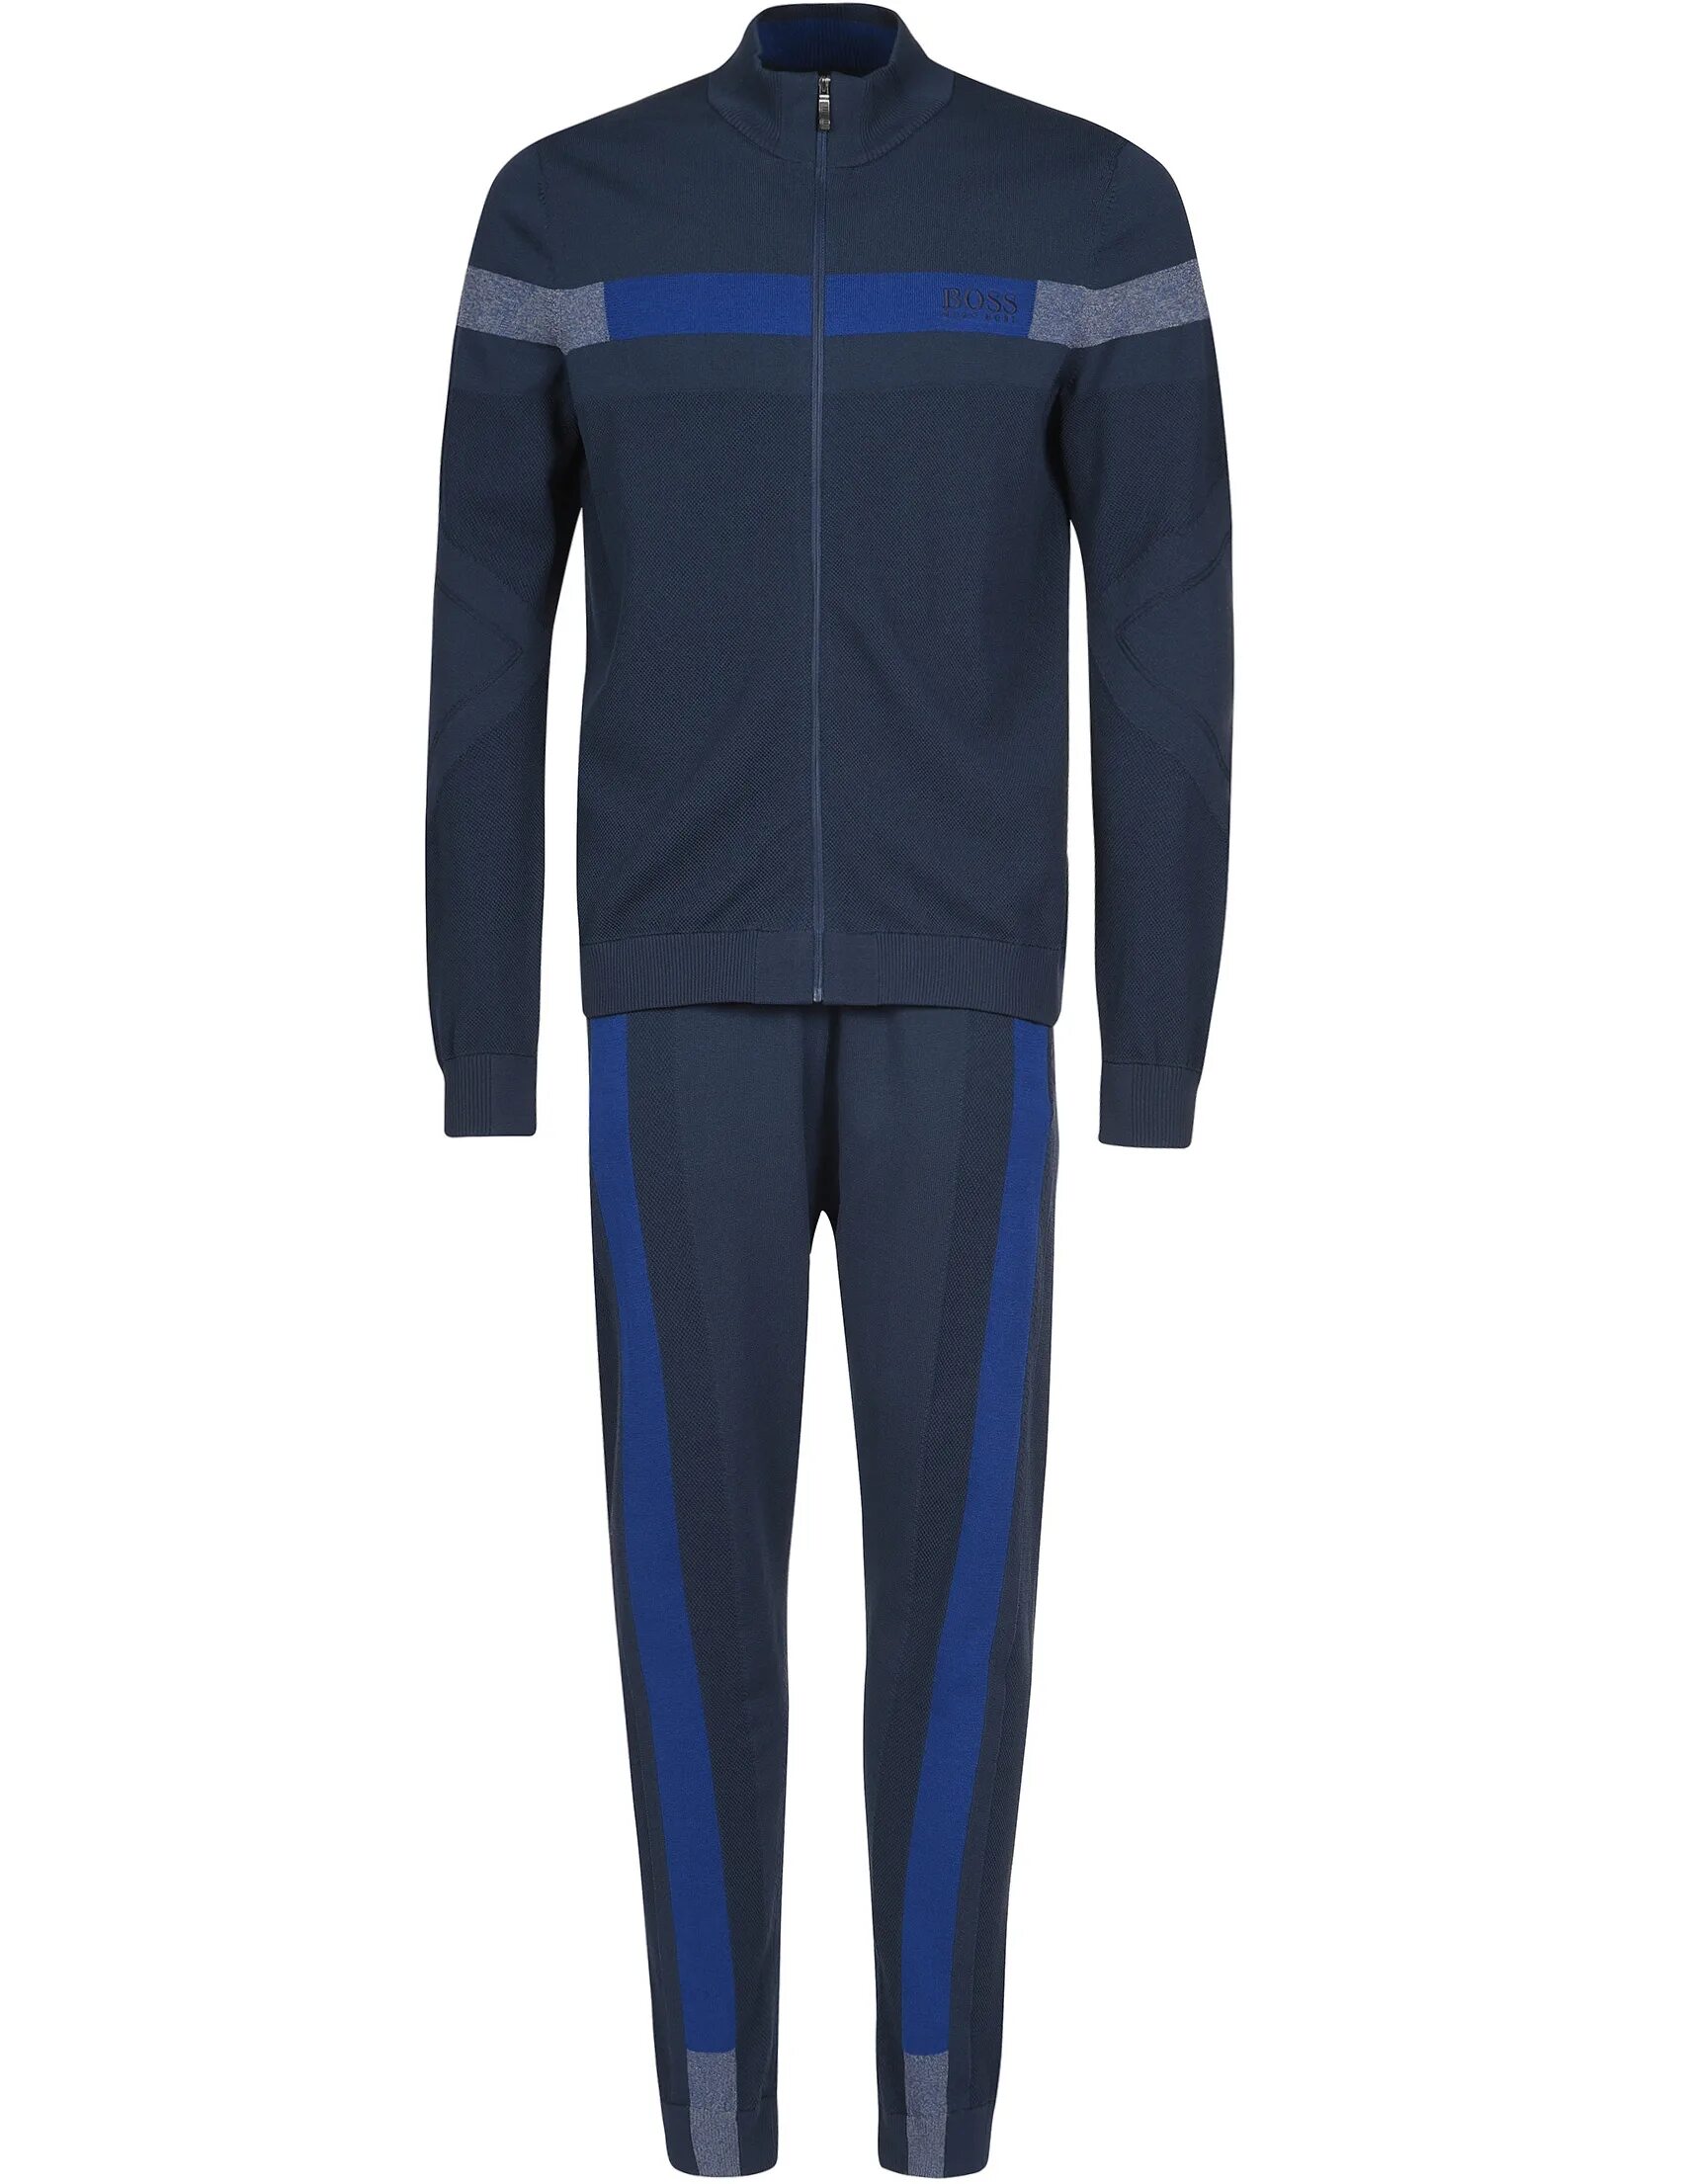 Спортивный костюм хуго. Спортивный костюм Хьюго босс. Спортивный костюм Hugo Boss мужской. Hugo Boss спортивный костюм мужской синий. Спортивный костюм Hugo Boss rn73616.